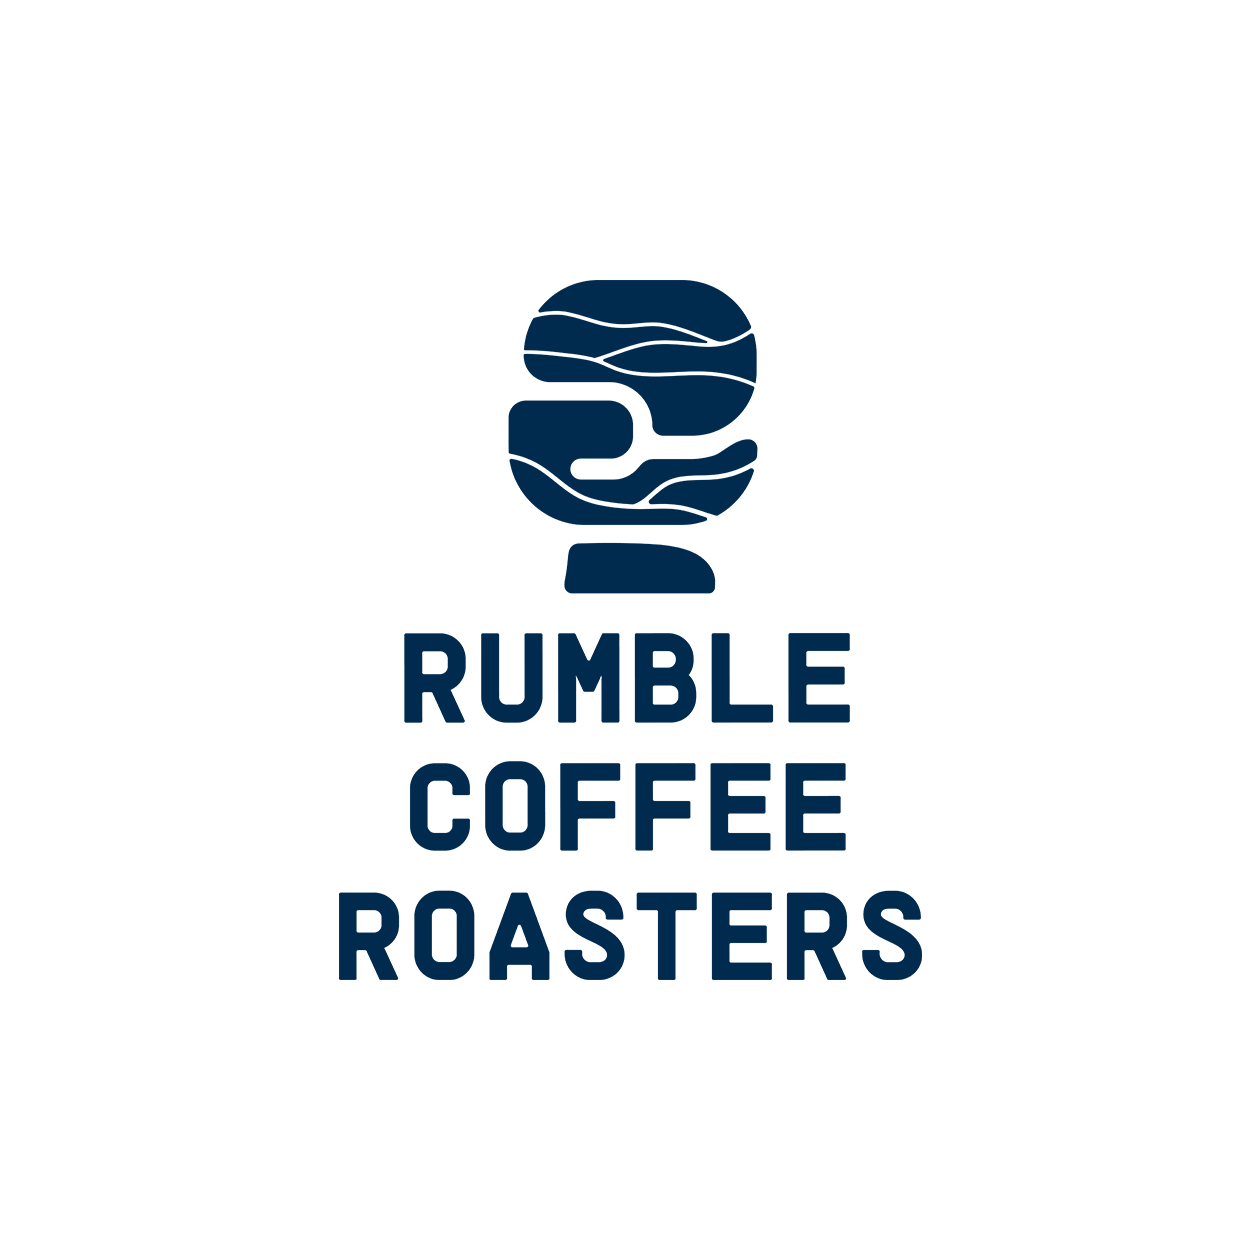 Rumble Coffee Roasters